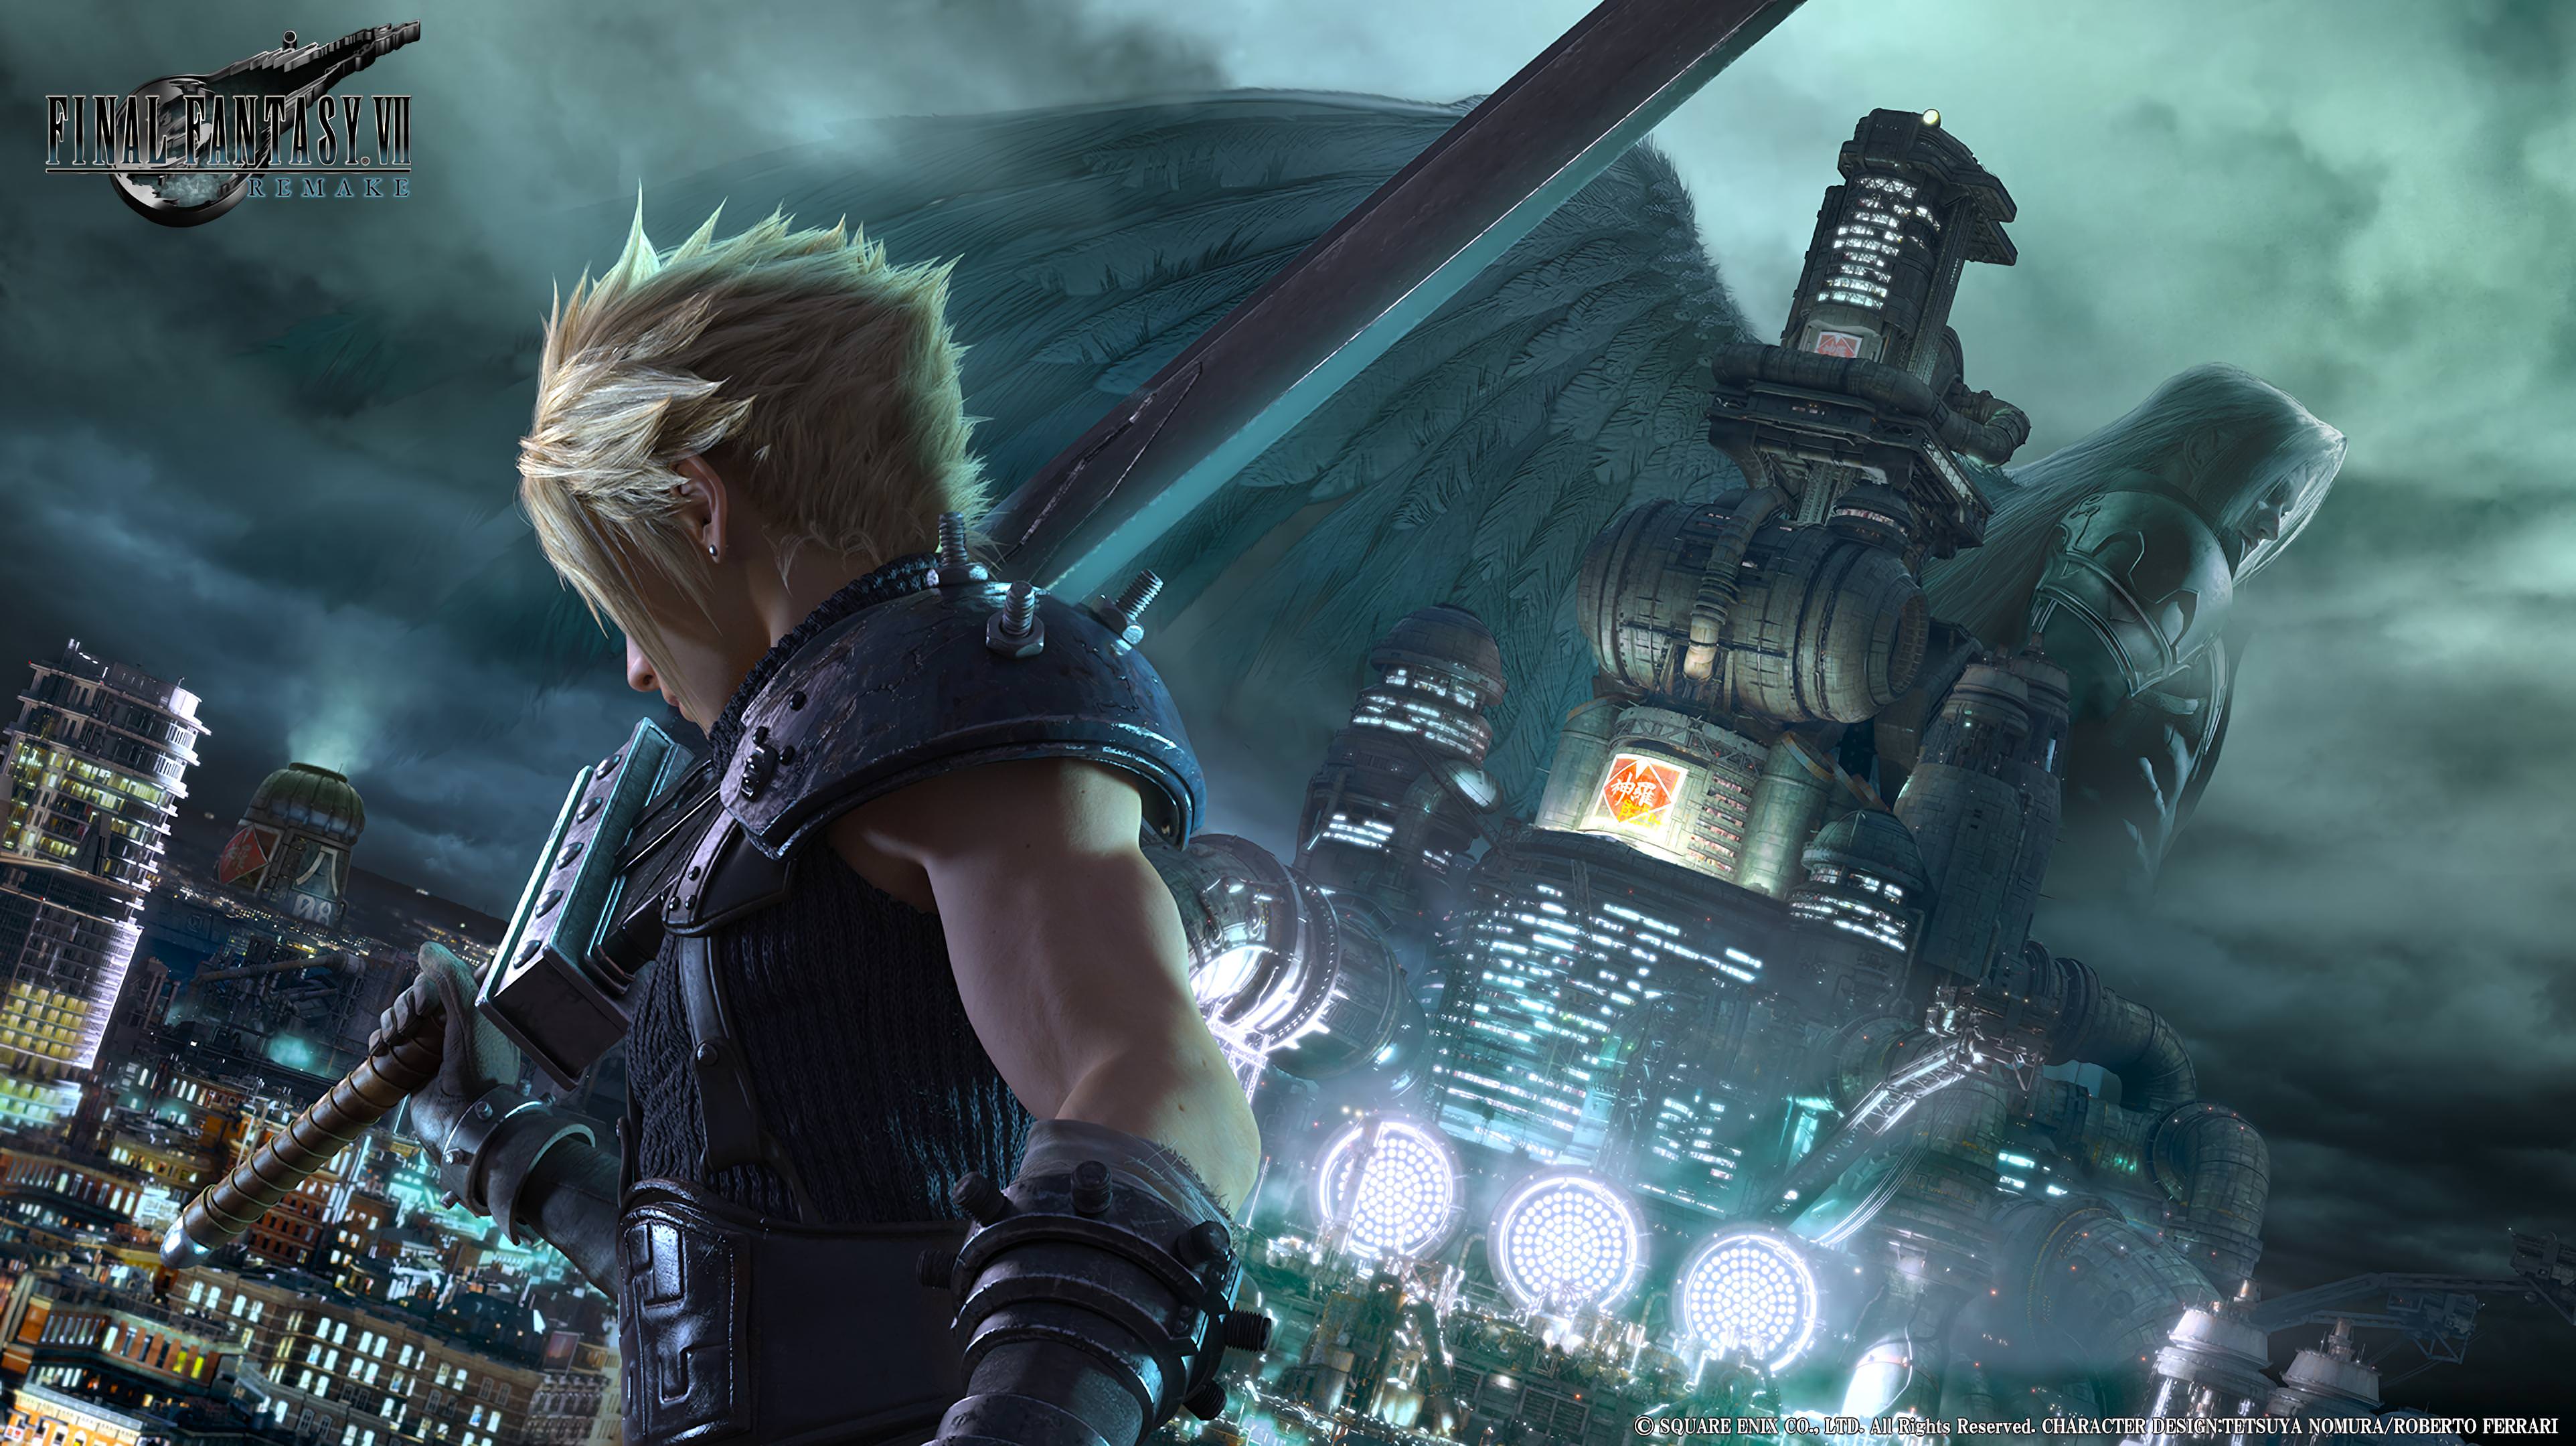 Final Fantasy VII Remake 4k Ultra HD Wallpaper | Background Image